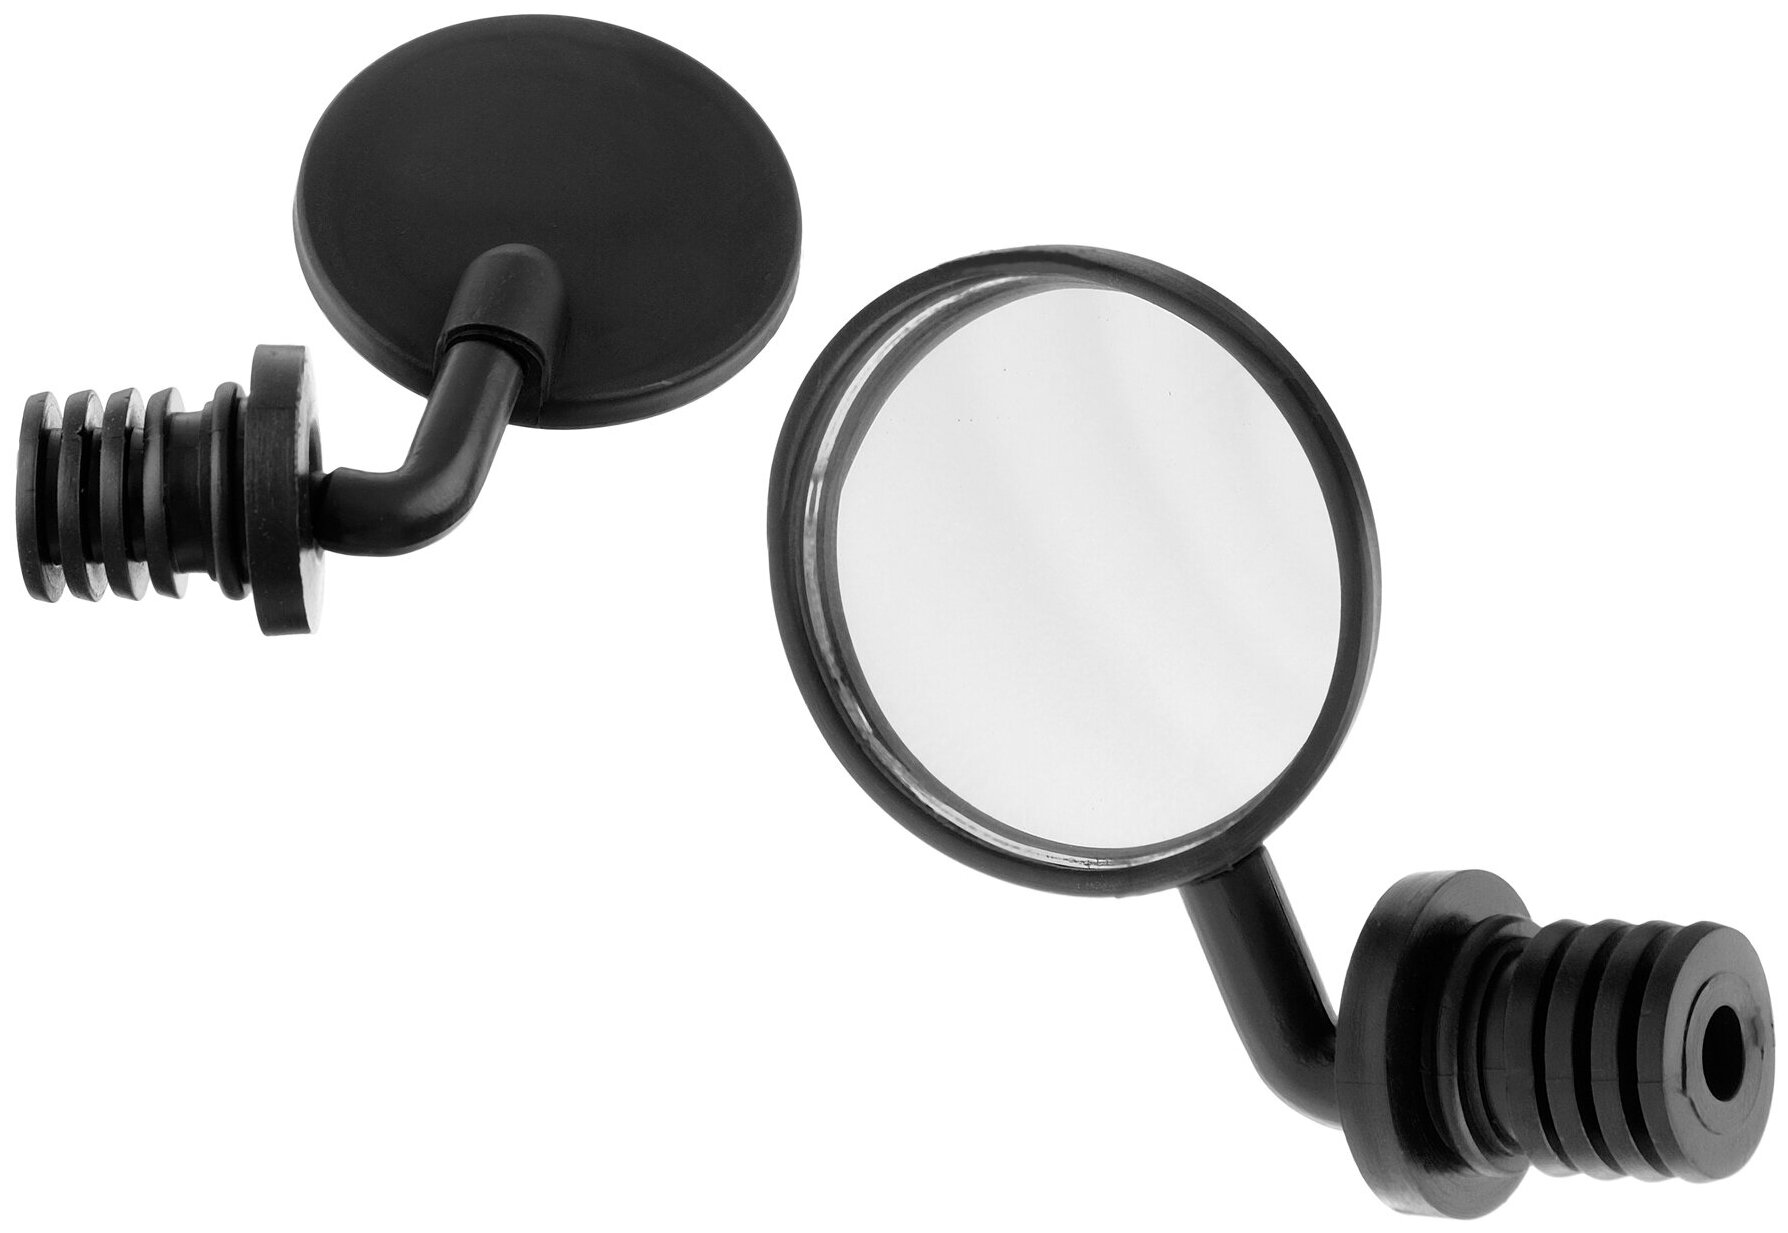 Зеркало велосипедное (1шт) круг с креплением вместо заглушки грипсы (360, пластик, черное)